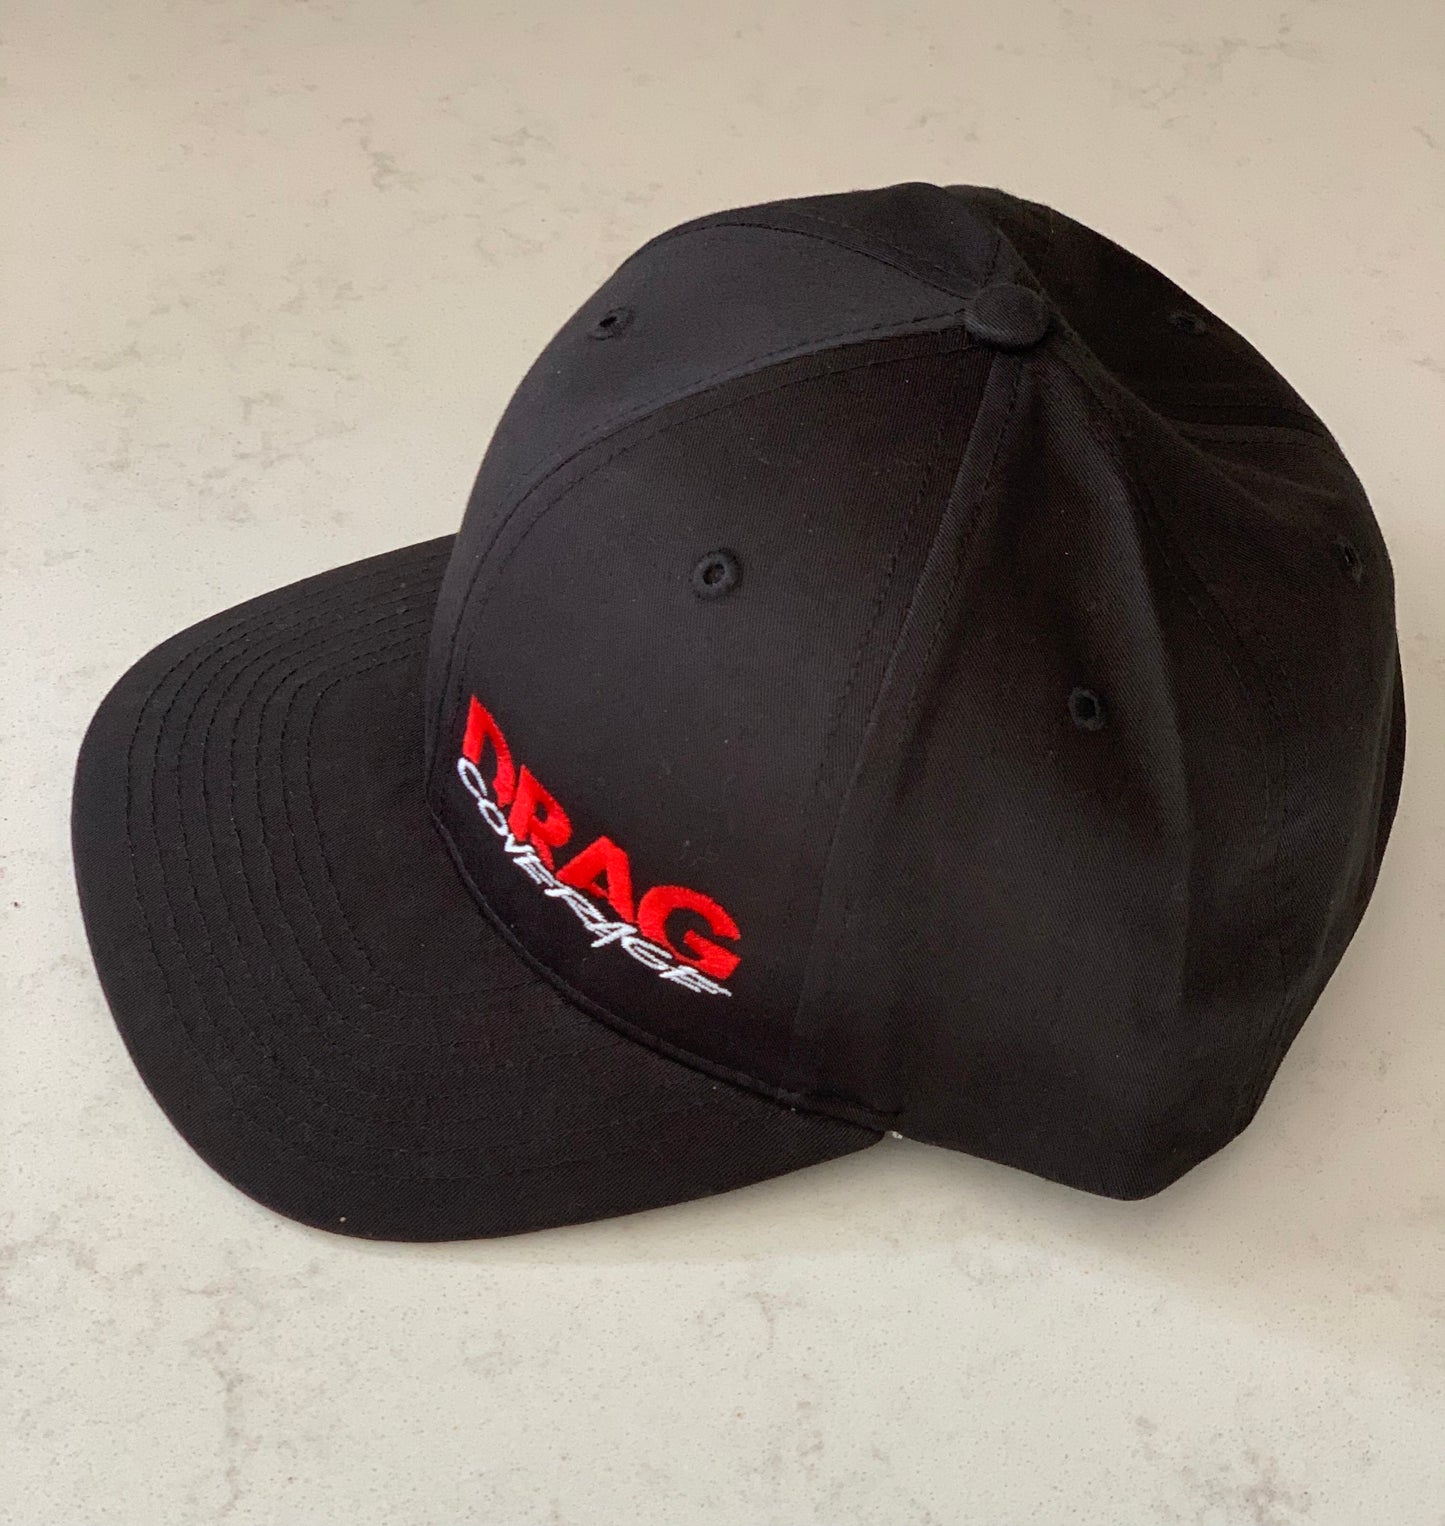 DragCoverage SnapBack Black Hat - Adjustable Size